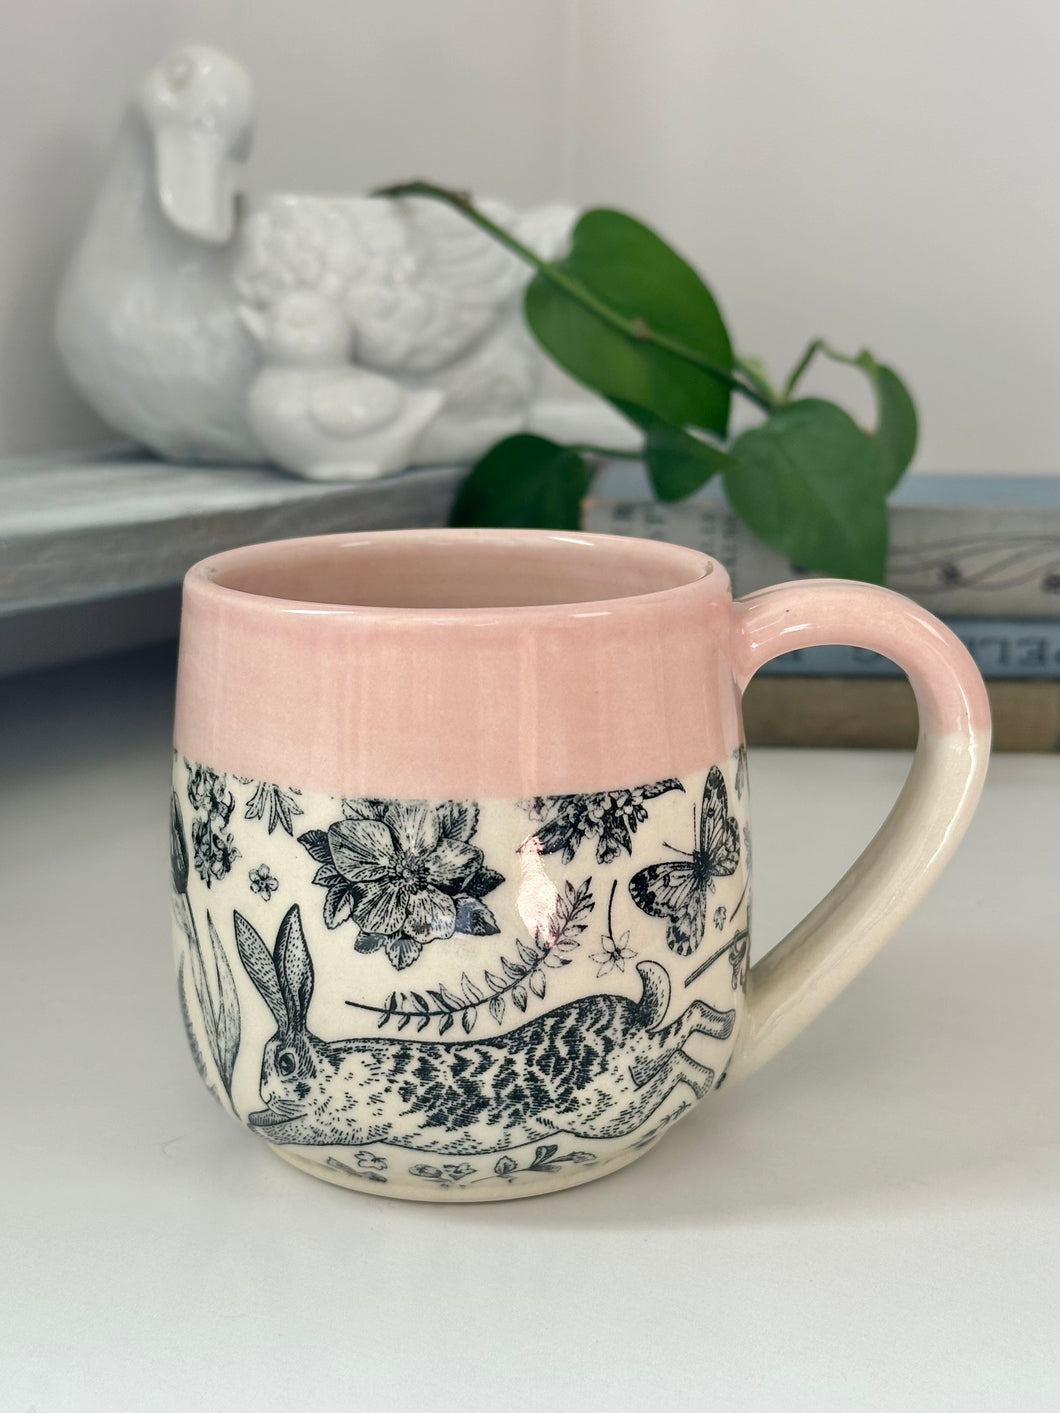 #010 - 14-16 oz. Bunny mug with pink rim